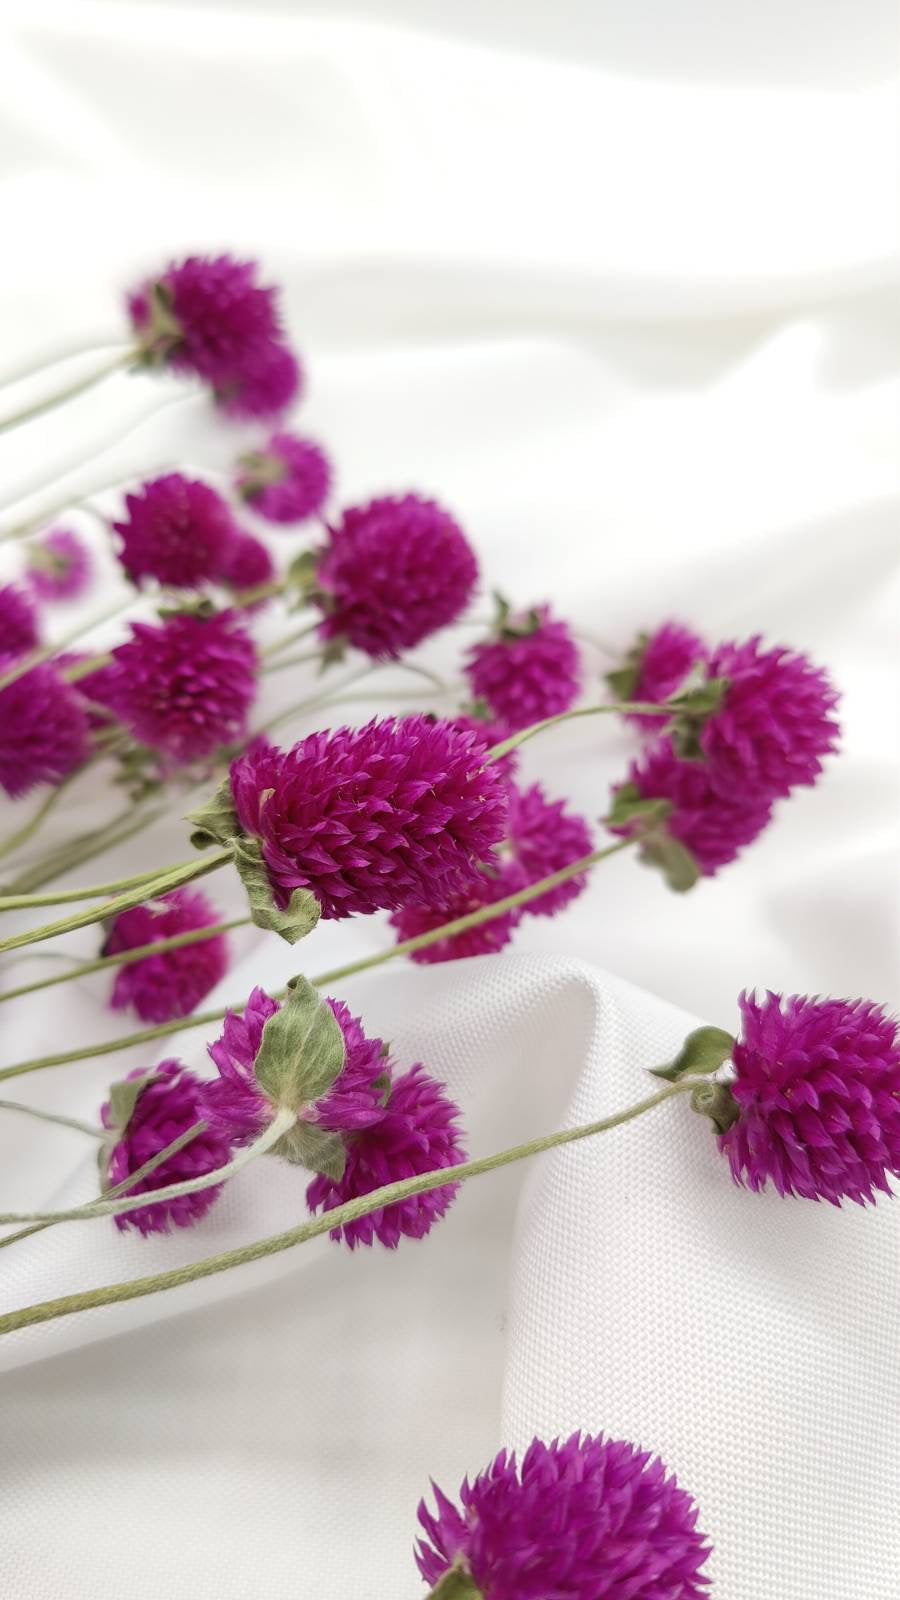 violett (1 Bund) - www.Flower-Passion.com